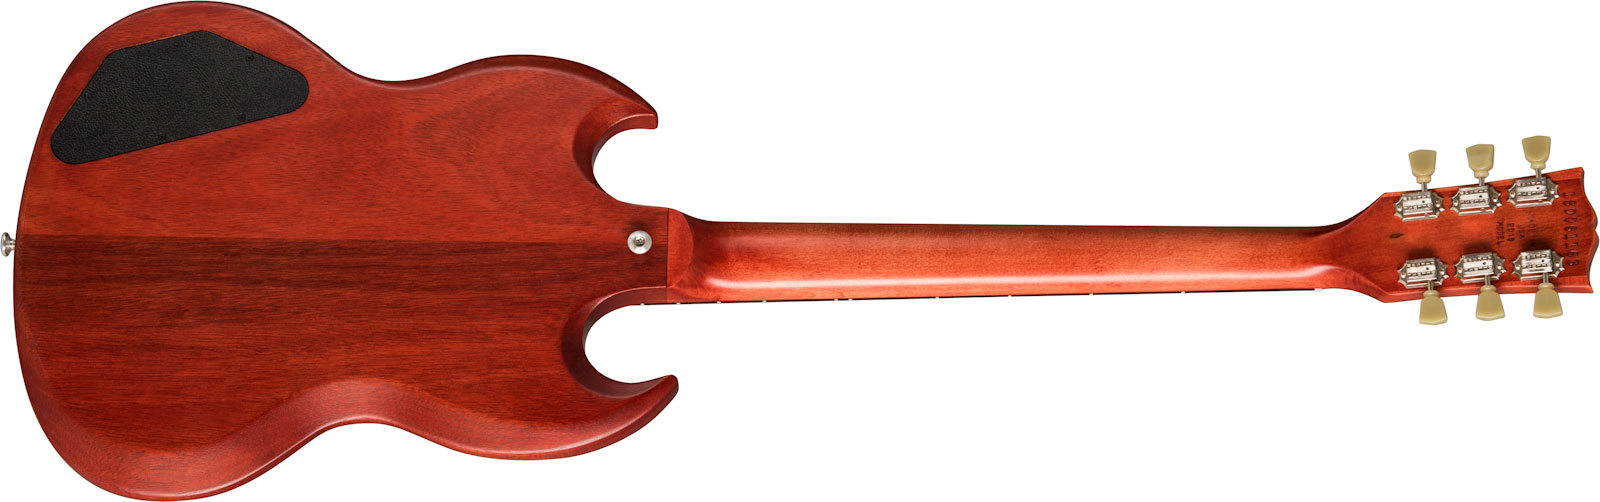 Gibson Sg Tribute Lh Modern Gaucher 2h Ht Rw - Vintage Cherry Satin - E-Gitarre für Linkshänder - Variation 1